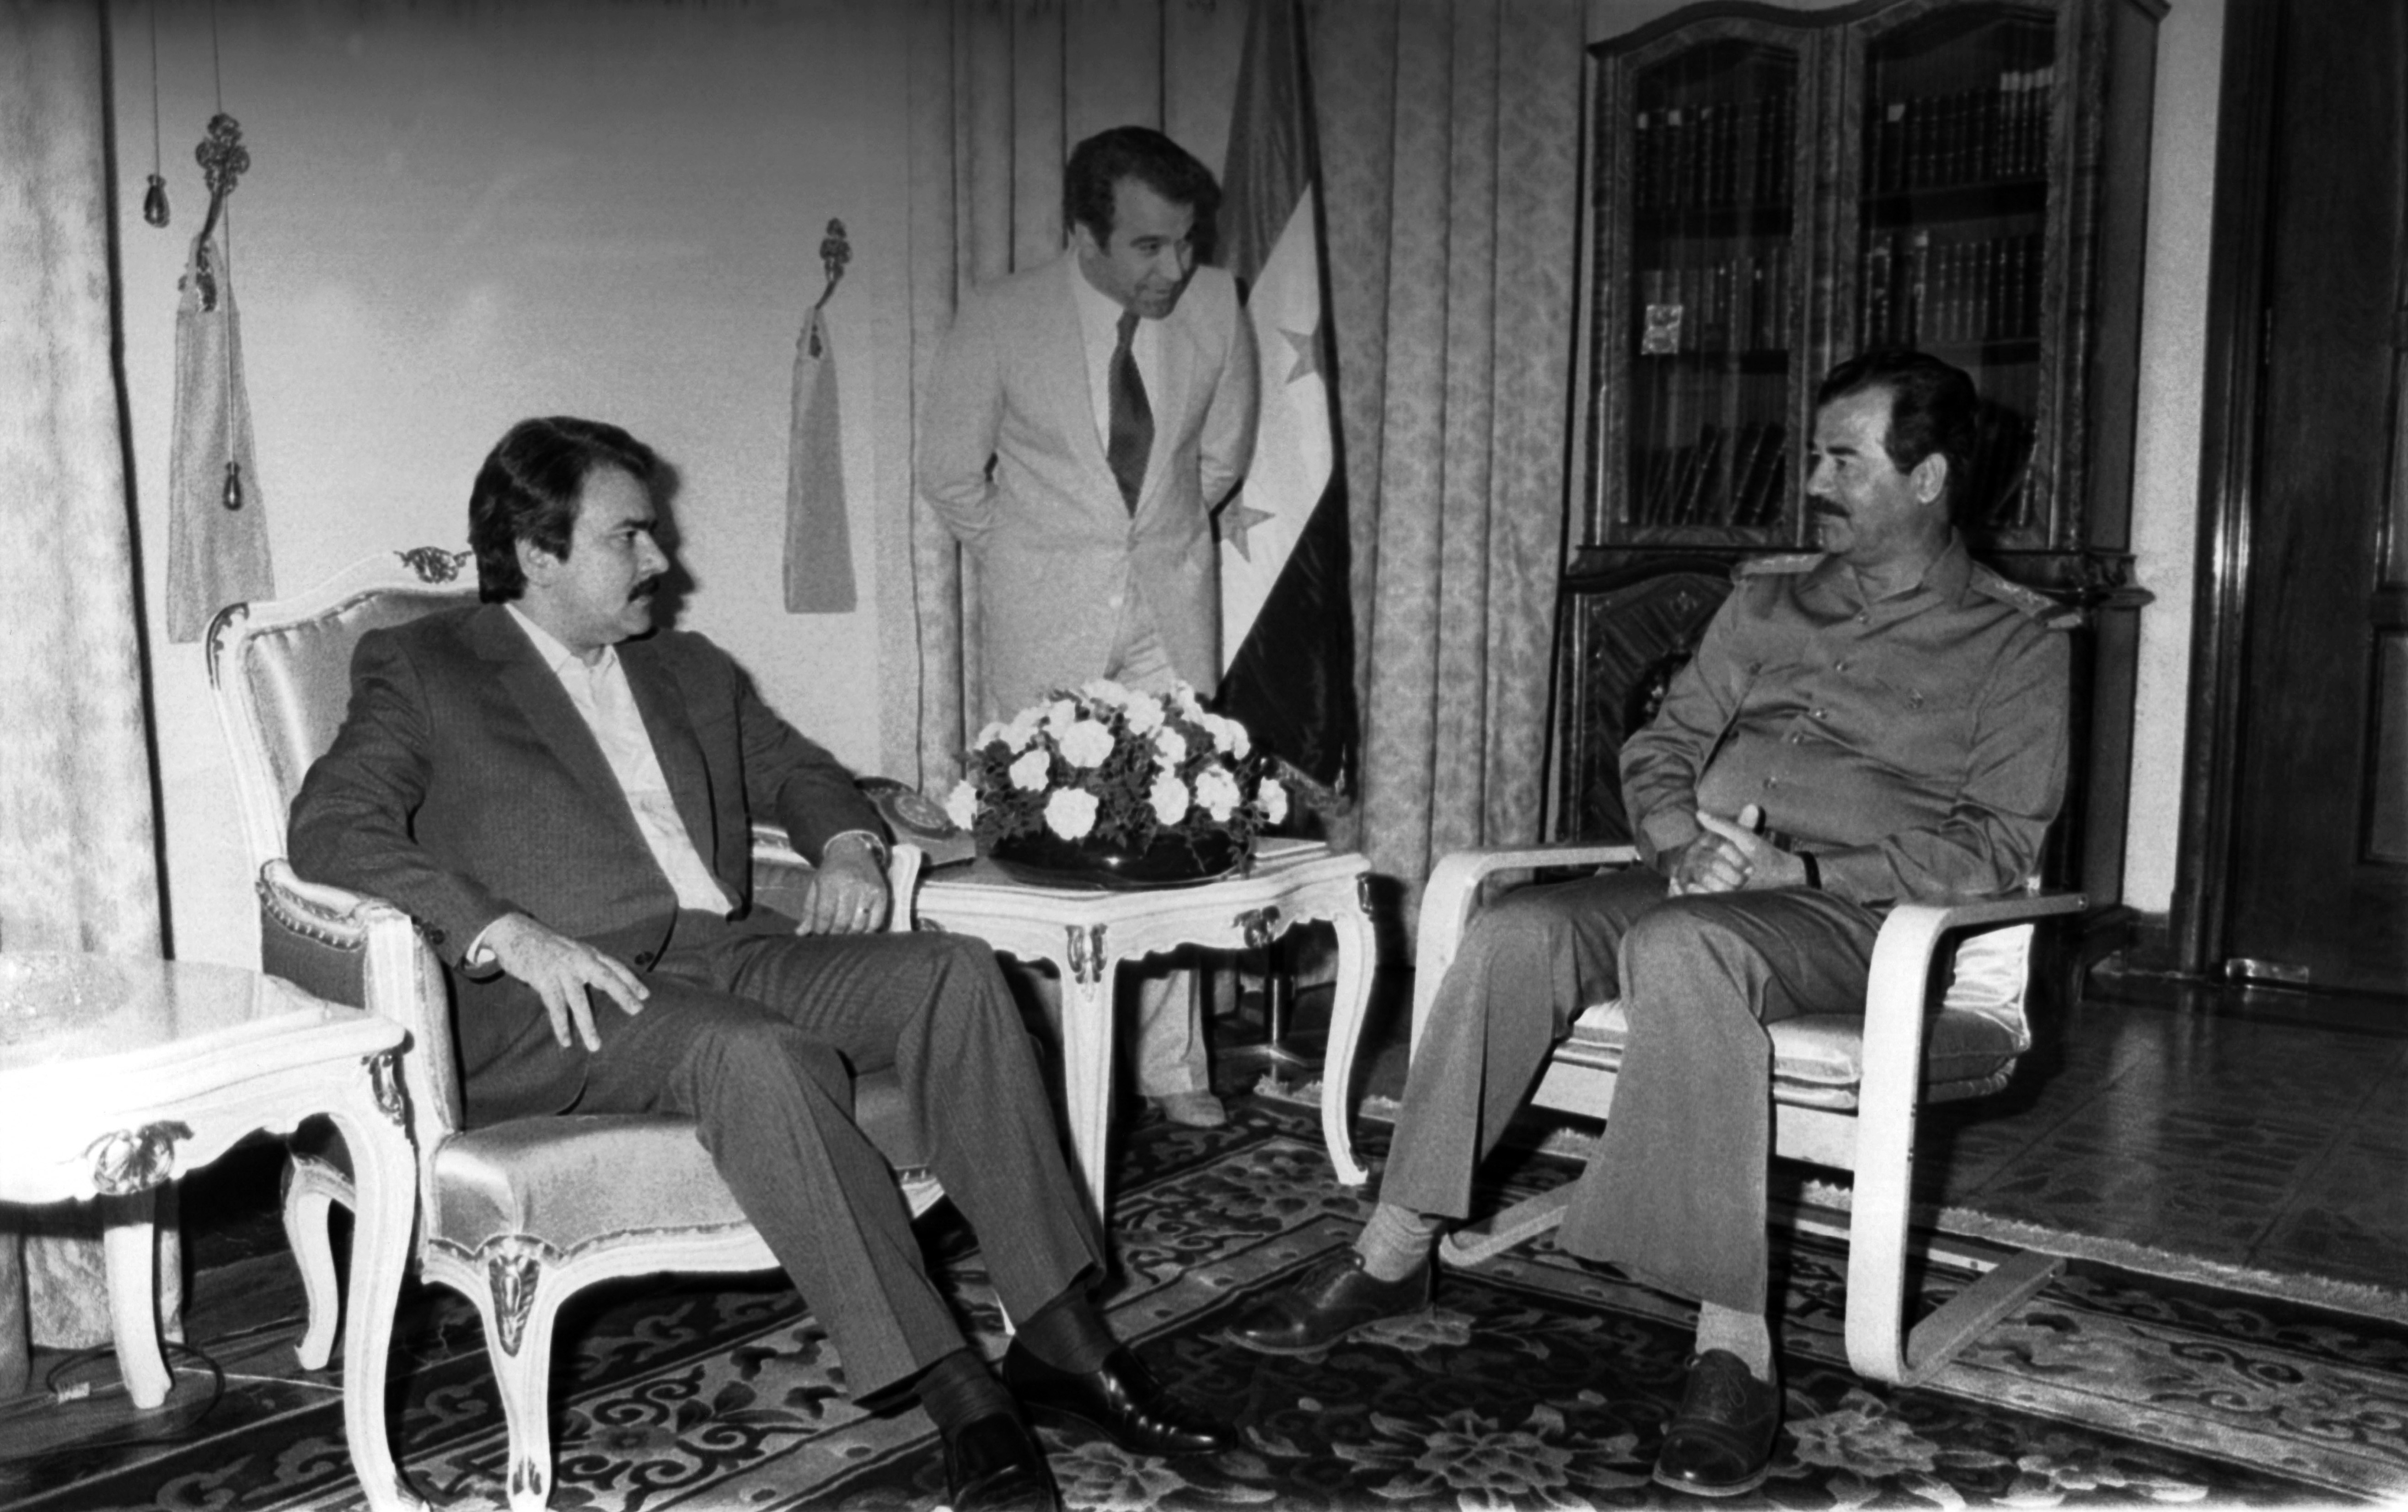 Entretien entre le président du Conseil national de la résistance d'Iran Massoud Radjavi et le Président irakien Saddam Hussein en juin 1986, Irak. (Photo by Arnaud BORREL/Gamma-Rapho via Getty Images)